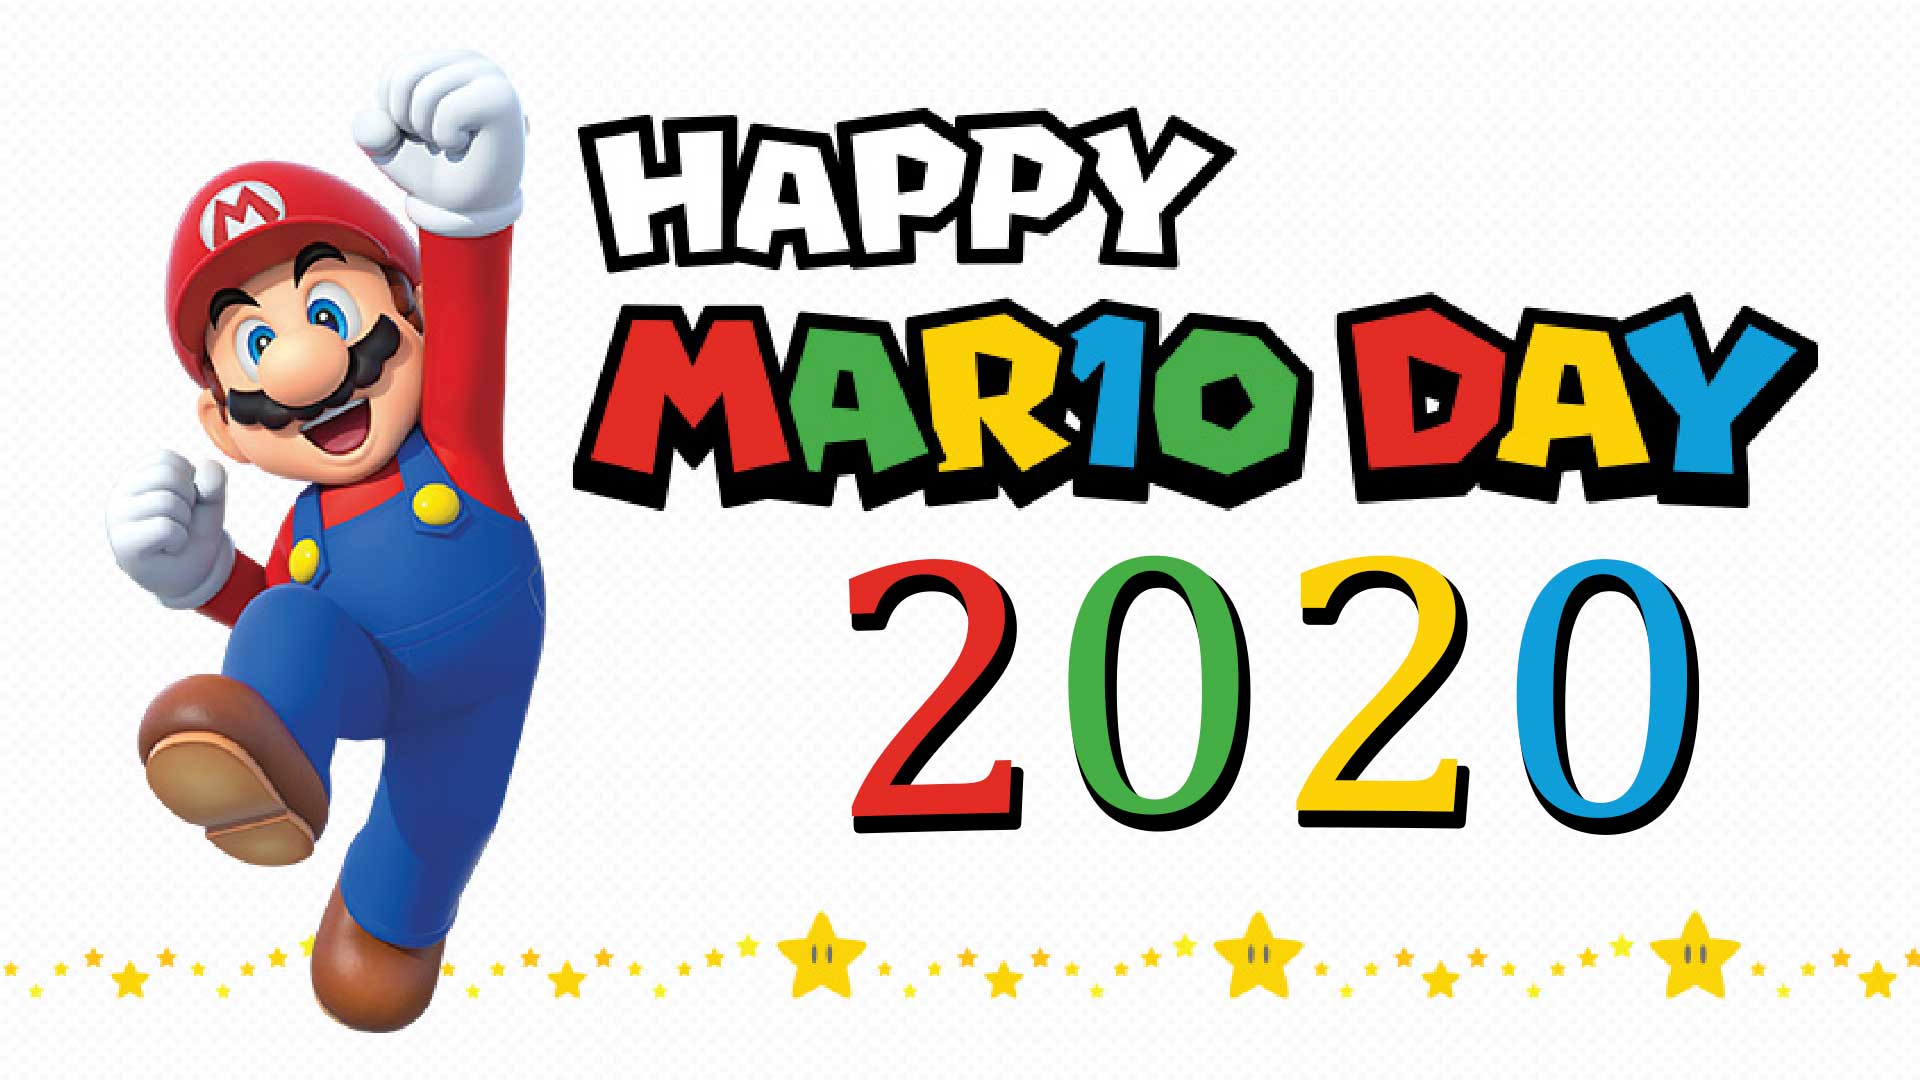 happy mar10 day mariotag mario day 2020